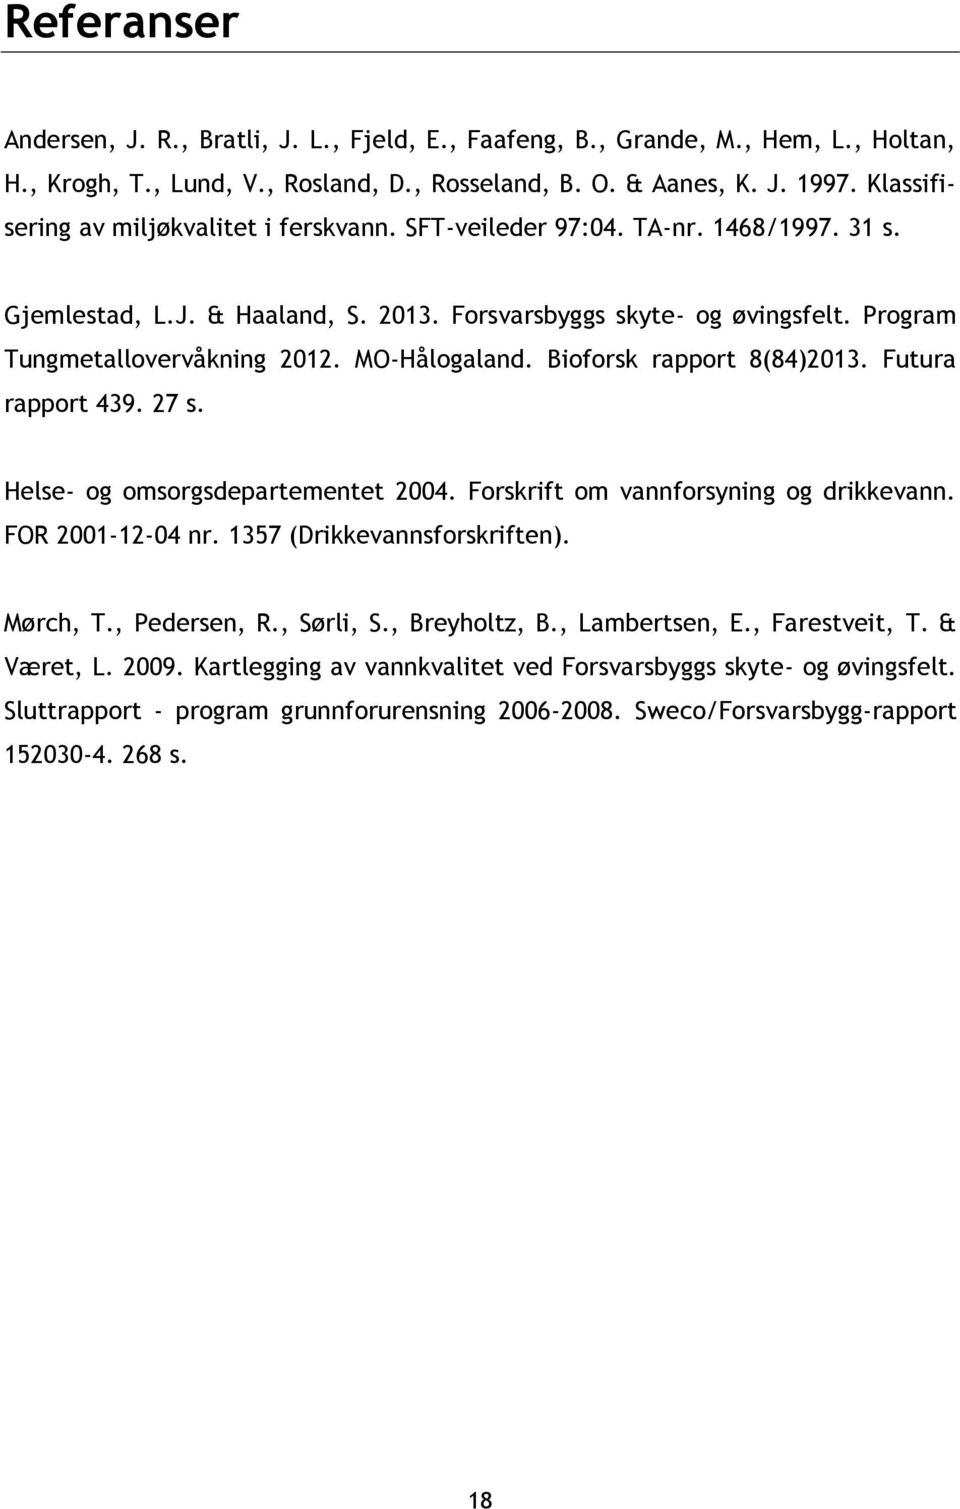 MO-Hålogaland. Bioforsk rapport 8(84)2013. Futura rapport 439. 27 s. Helse- og omsorgsdepartementet 2004. Forskrift om vannforsyning og drikkevann. FOR 2001-12-04 nr. 1357 (Drikkevannsforskriften).